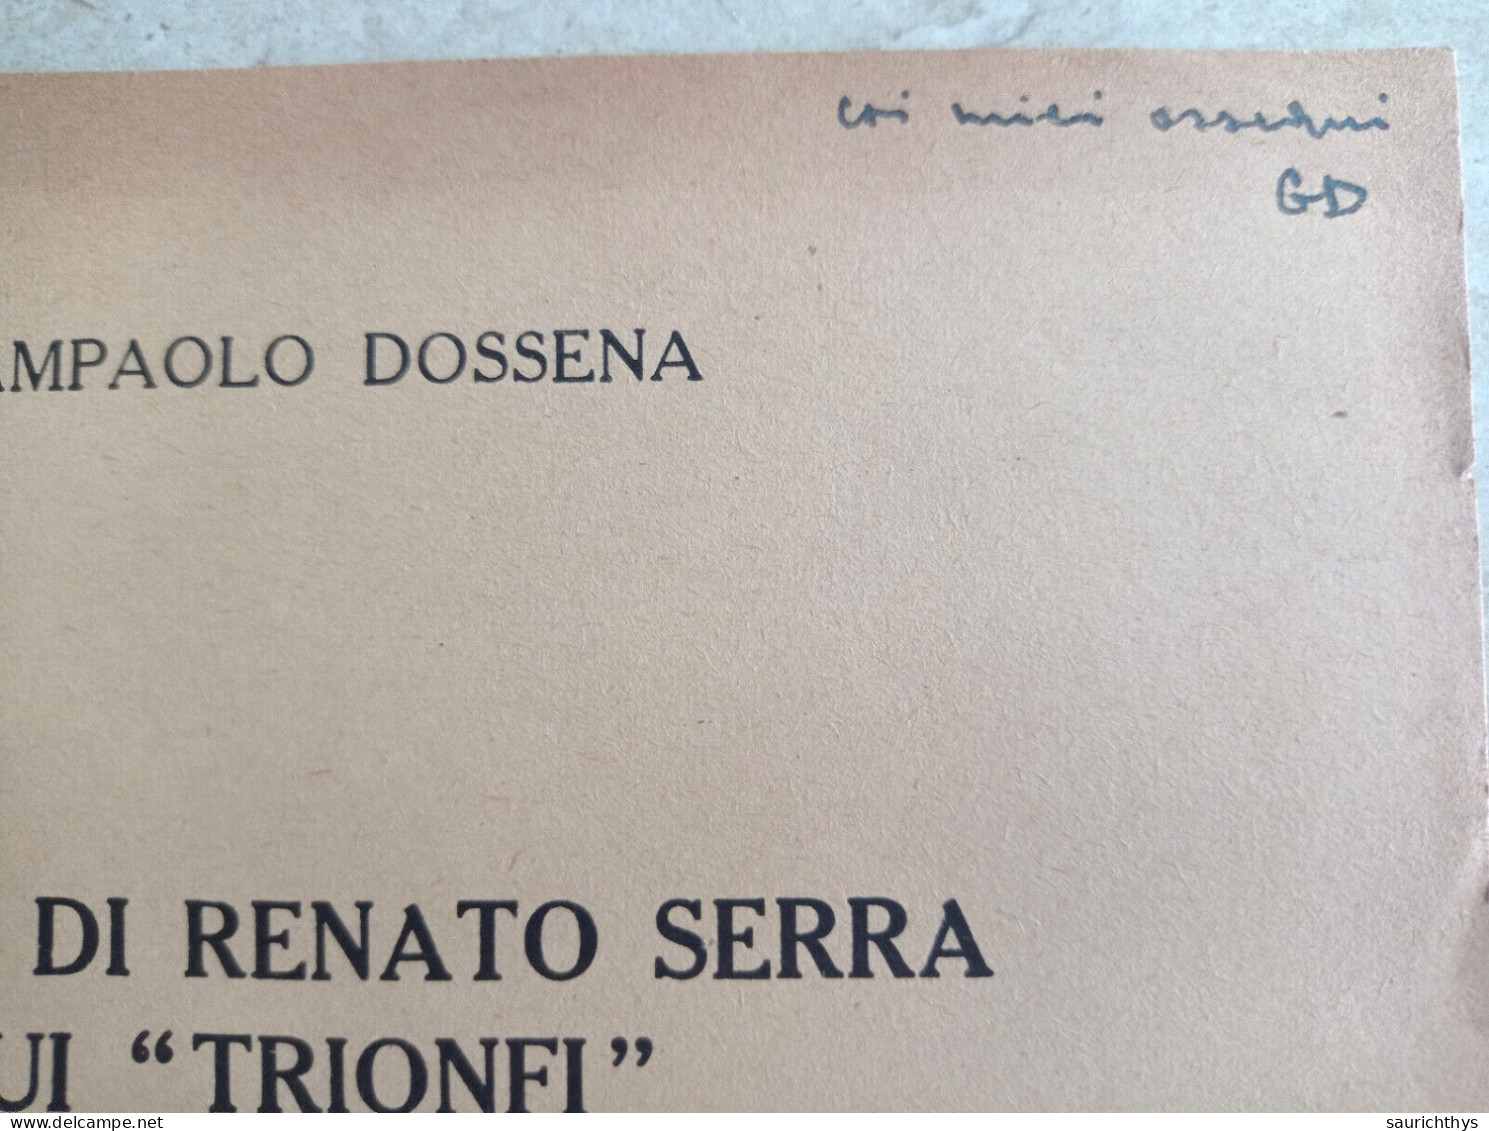 La Tesi Di Renato Serra Sui Trionfi Autografo Giampaolo Dossena Da Cremona Estratto Da Convivium 1956 - History, Biography, Philosophy